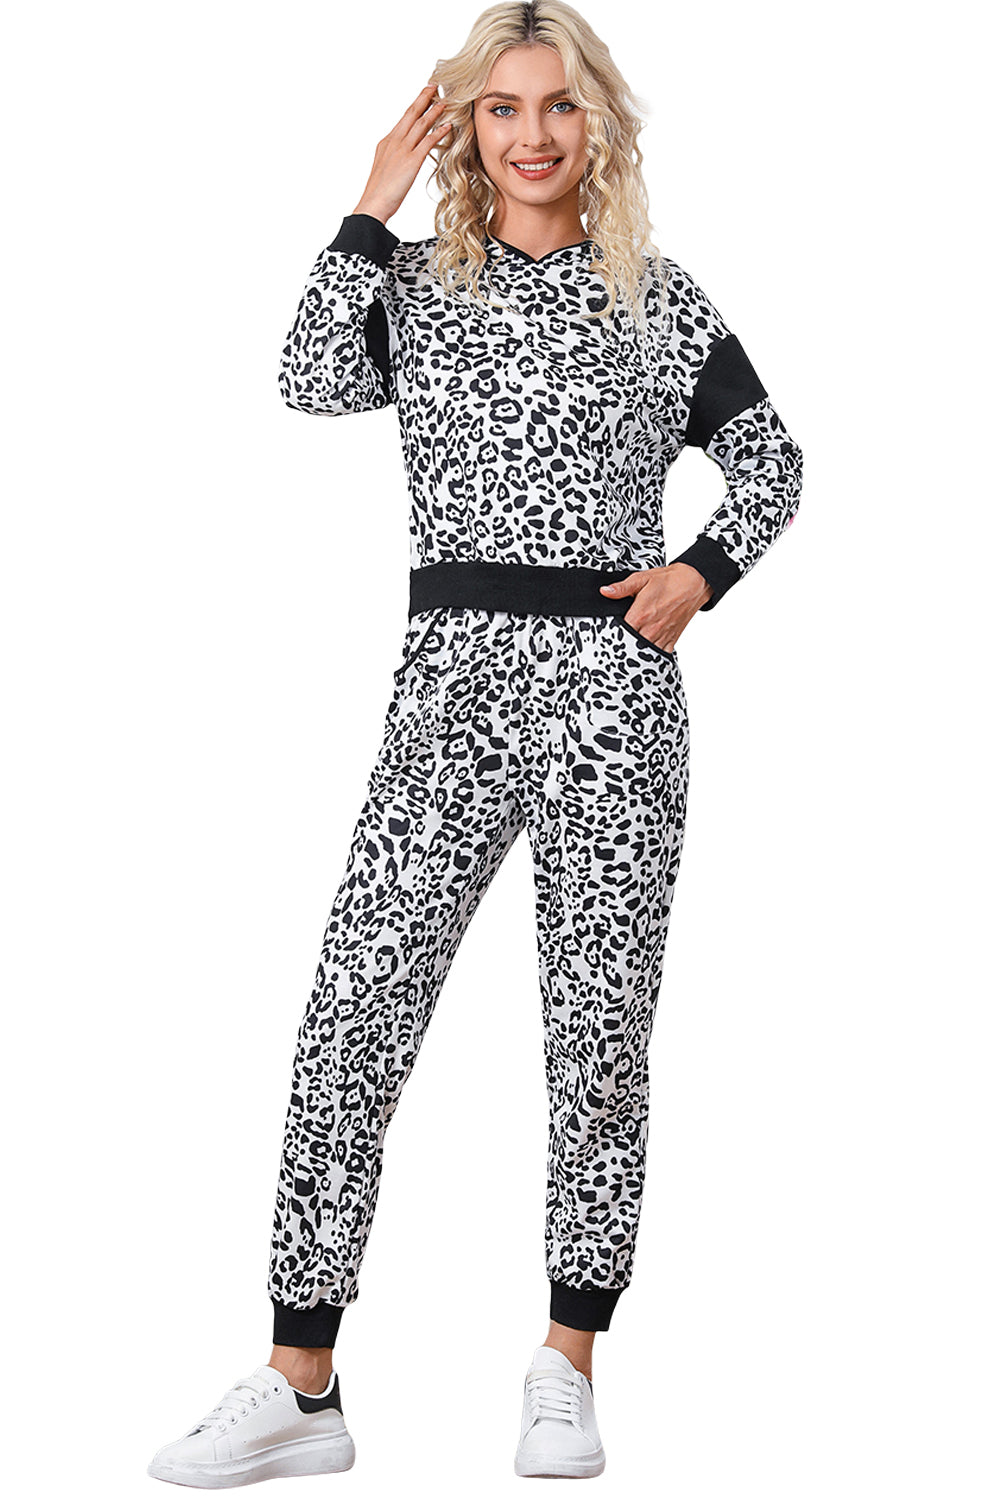 Pulover s leopard printom i set džogerica